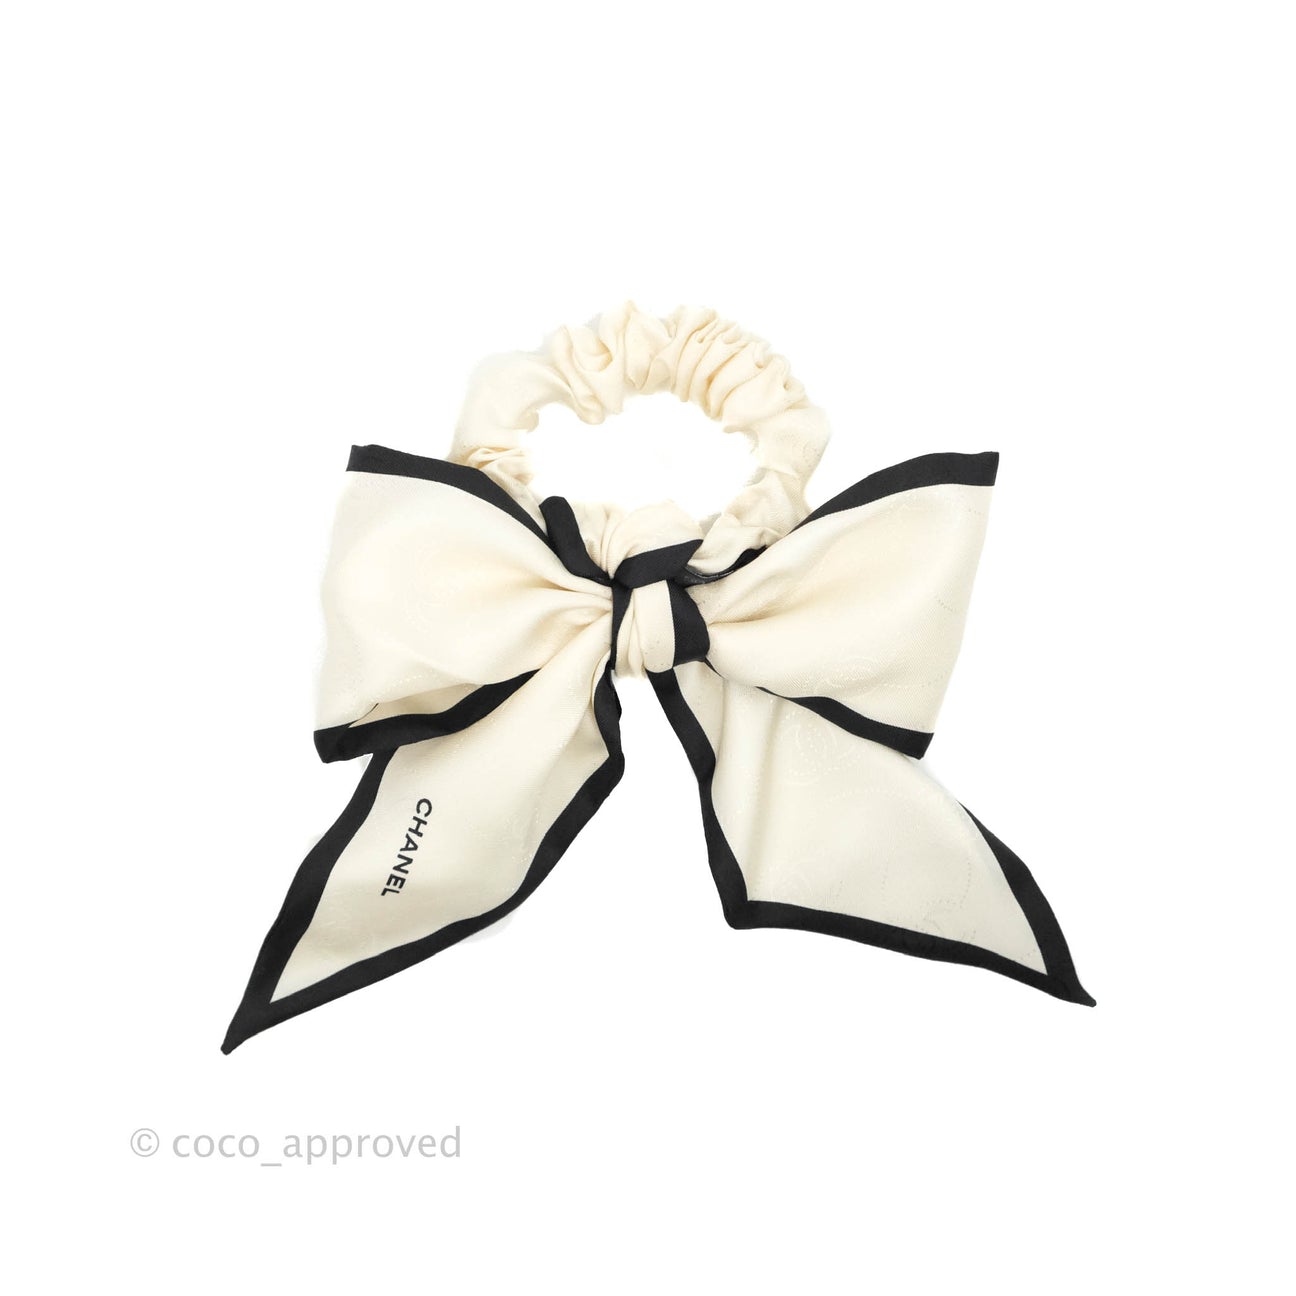 CHANEL Satin CC Hair Clip Bow Black White, FASHIONPHILE